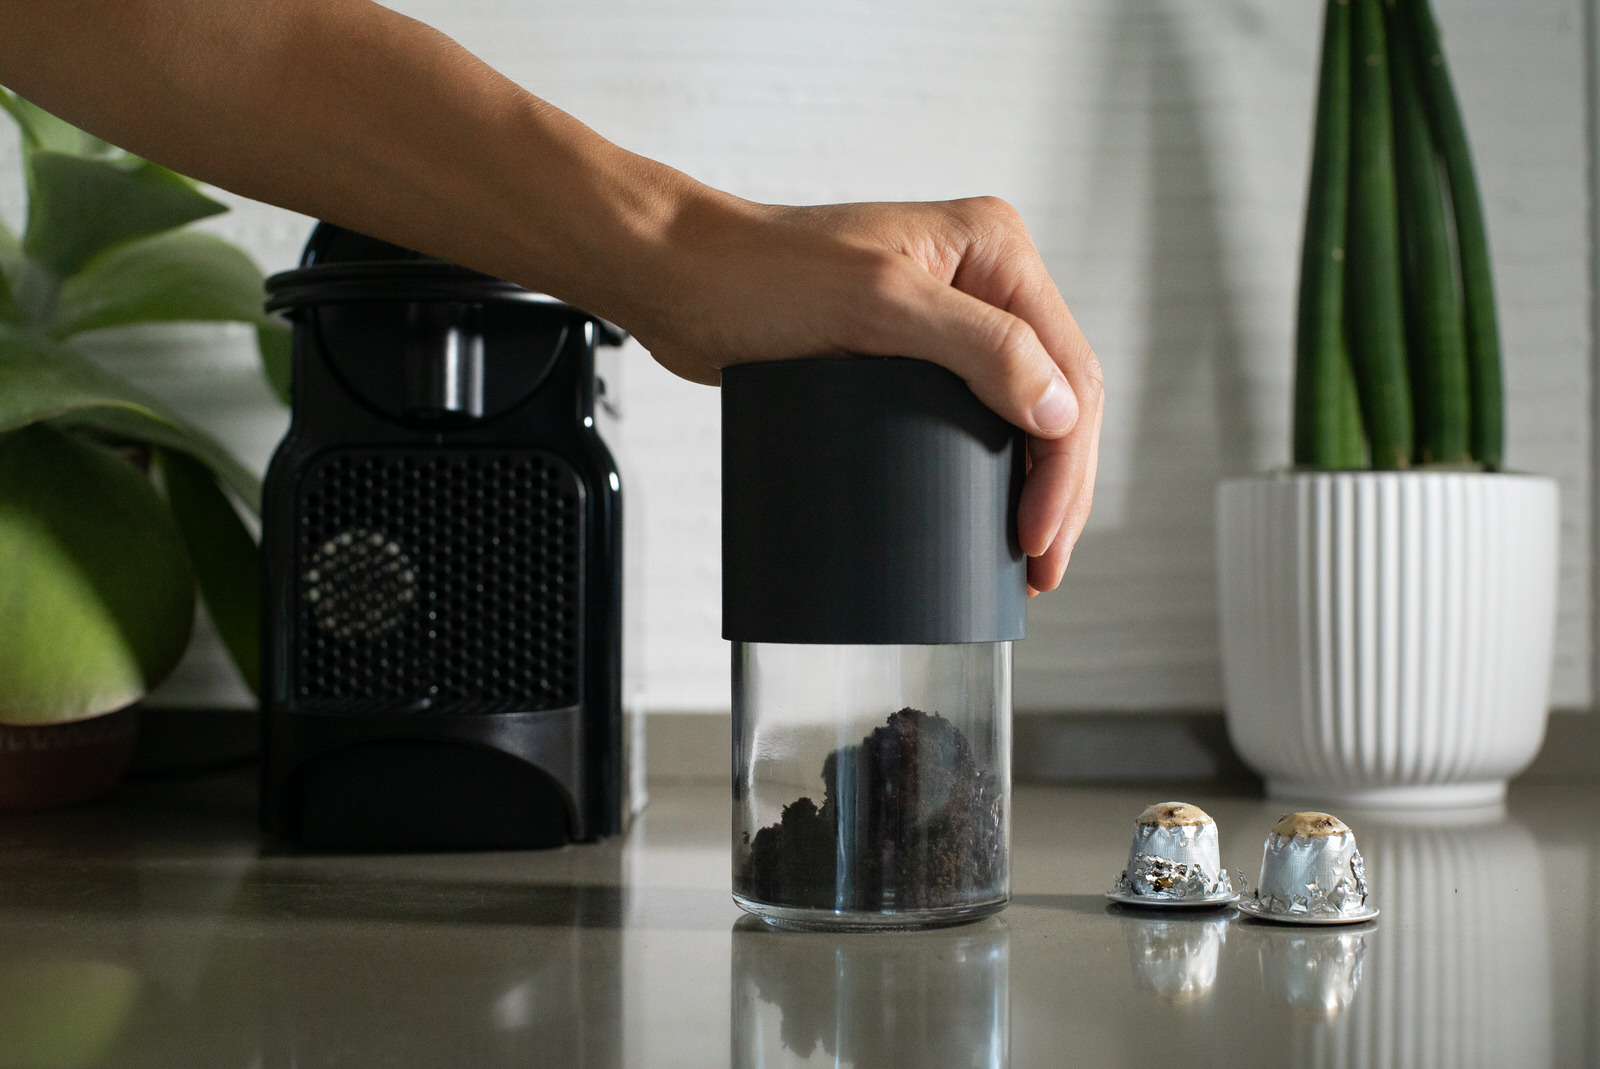 NIMS SpA - Aggiungi un tocco di eleganza al tuo rito quotidiano: la Coffee  Box ti permette di conservare le tue capsule in un contenitore pratico ed  elegante!